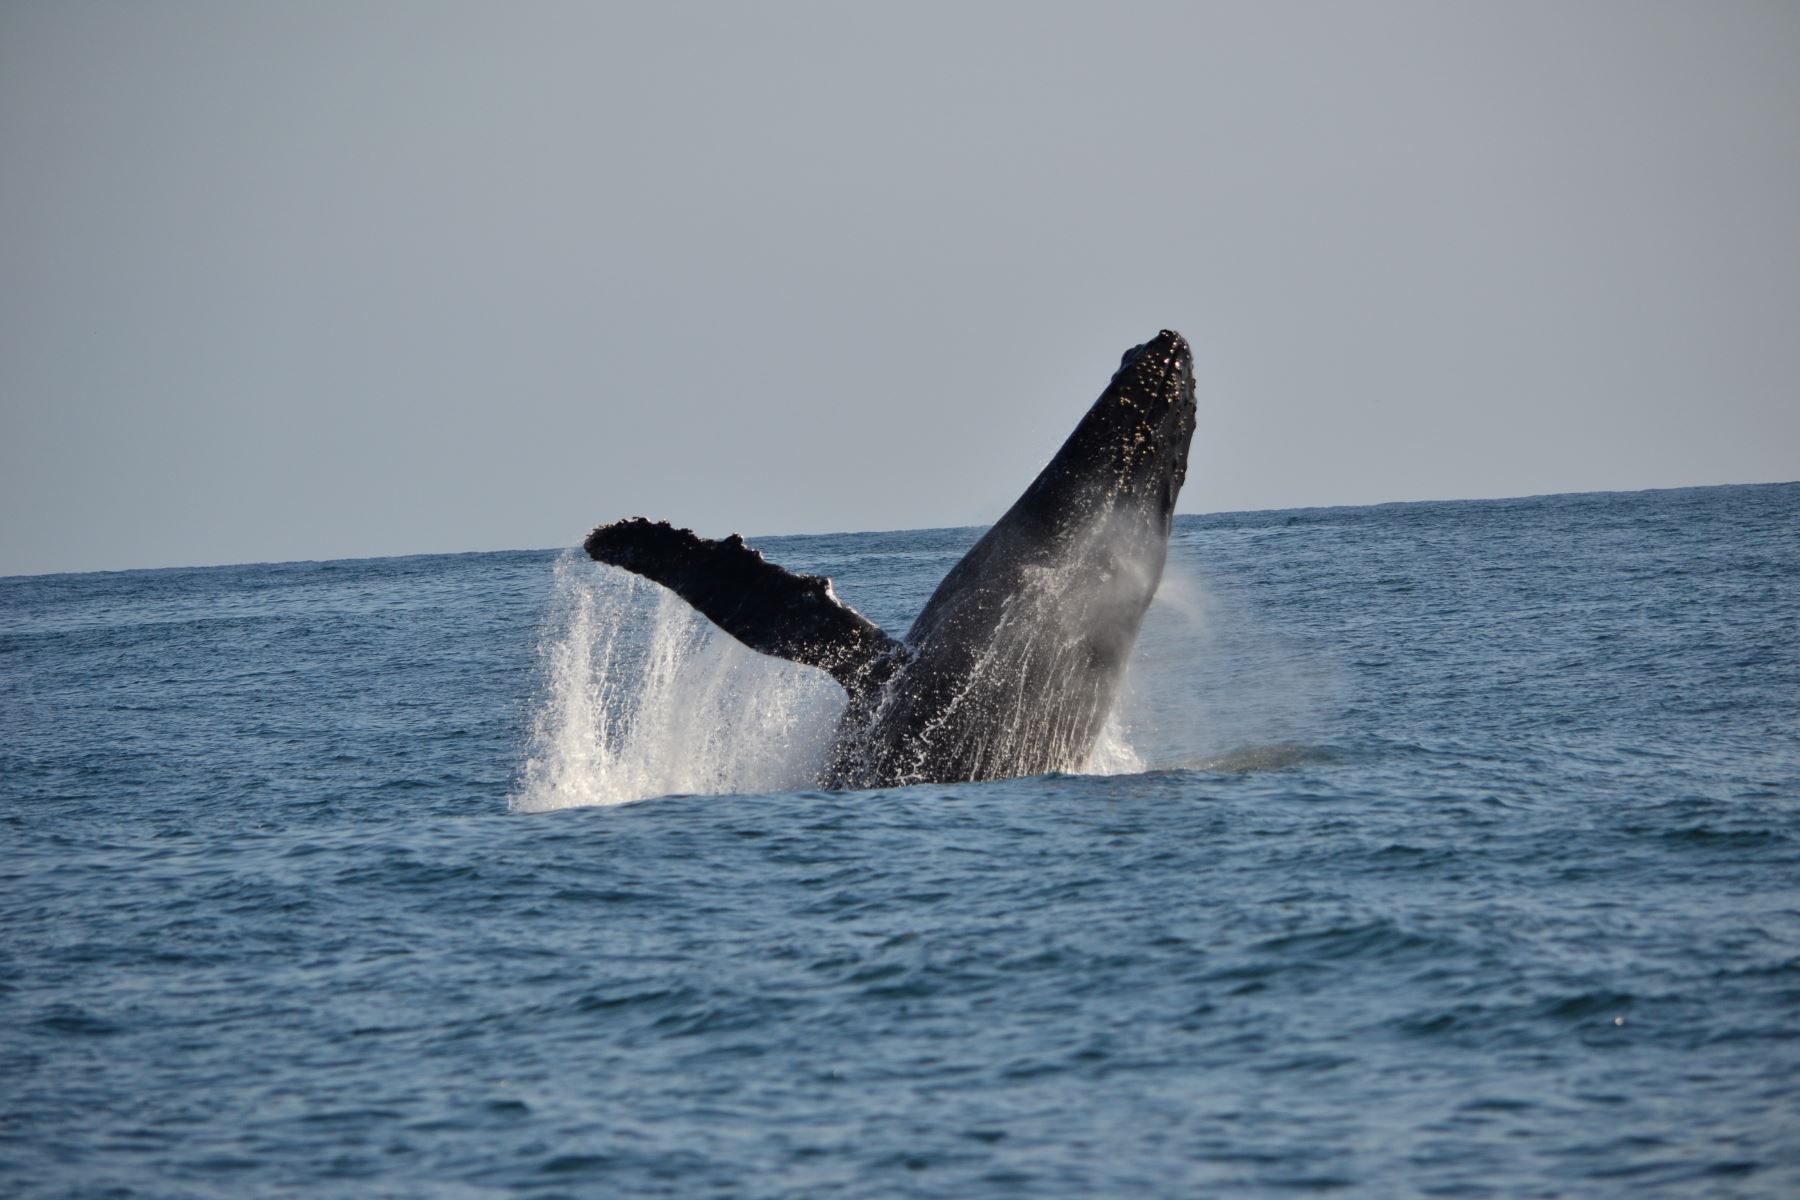 Especies migratorias como la ballena jorobada transitan por el sector donde se propone crear la Reserva Nacional Dorsal de Nasca, frente a las costas del departamento de Ica. Cortesía